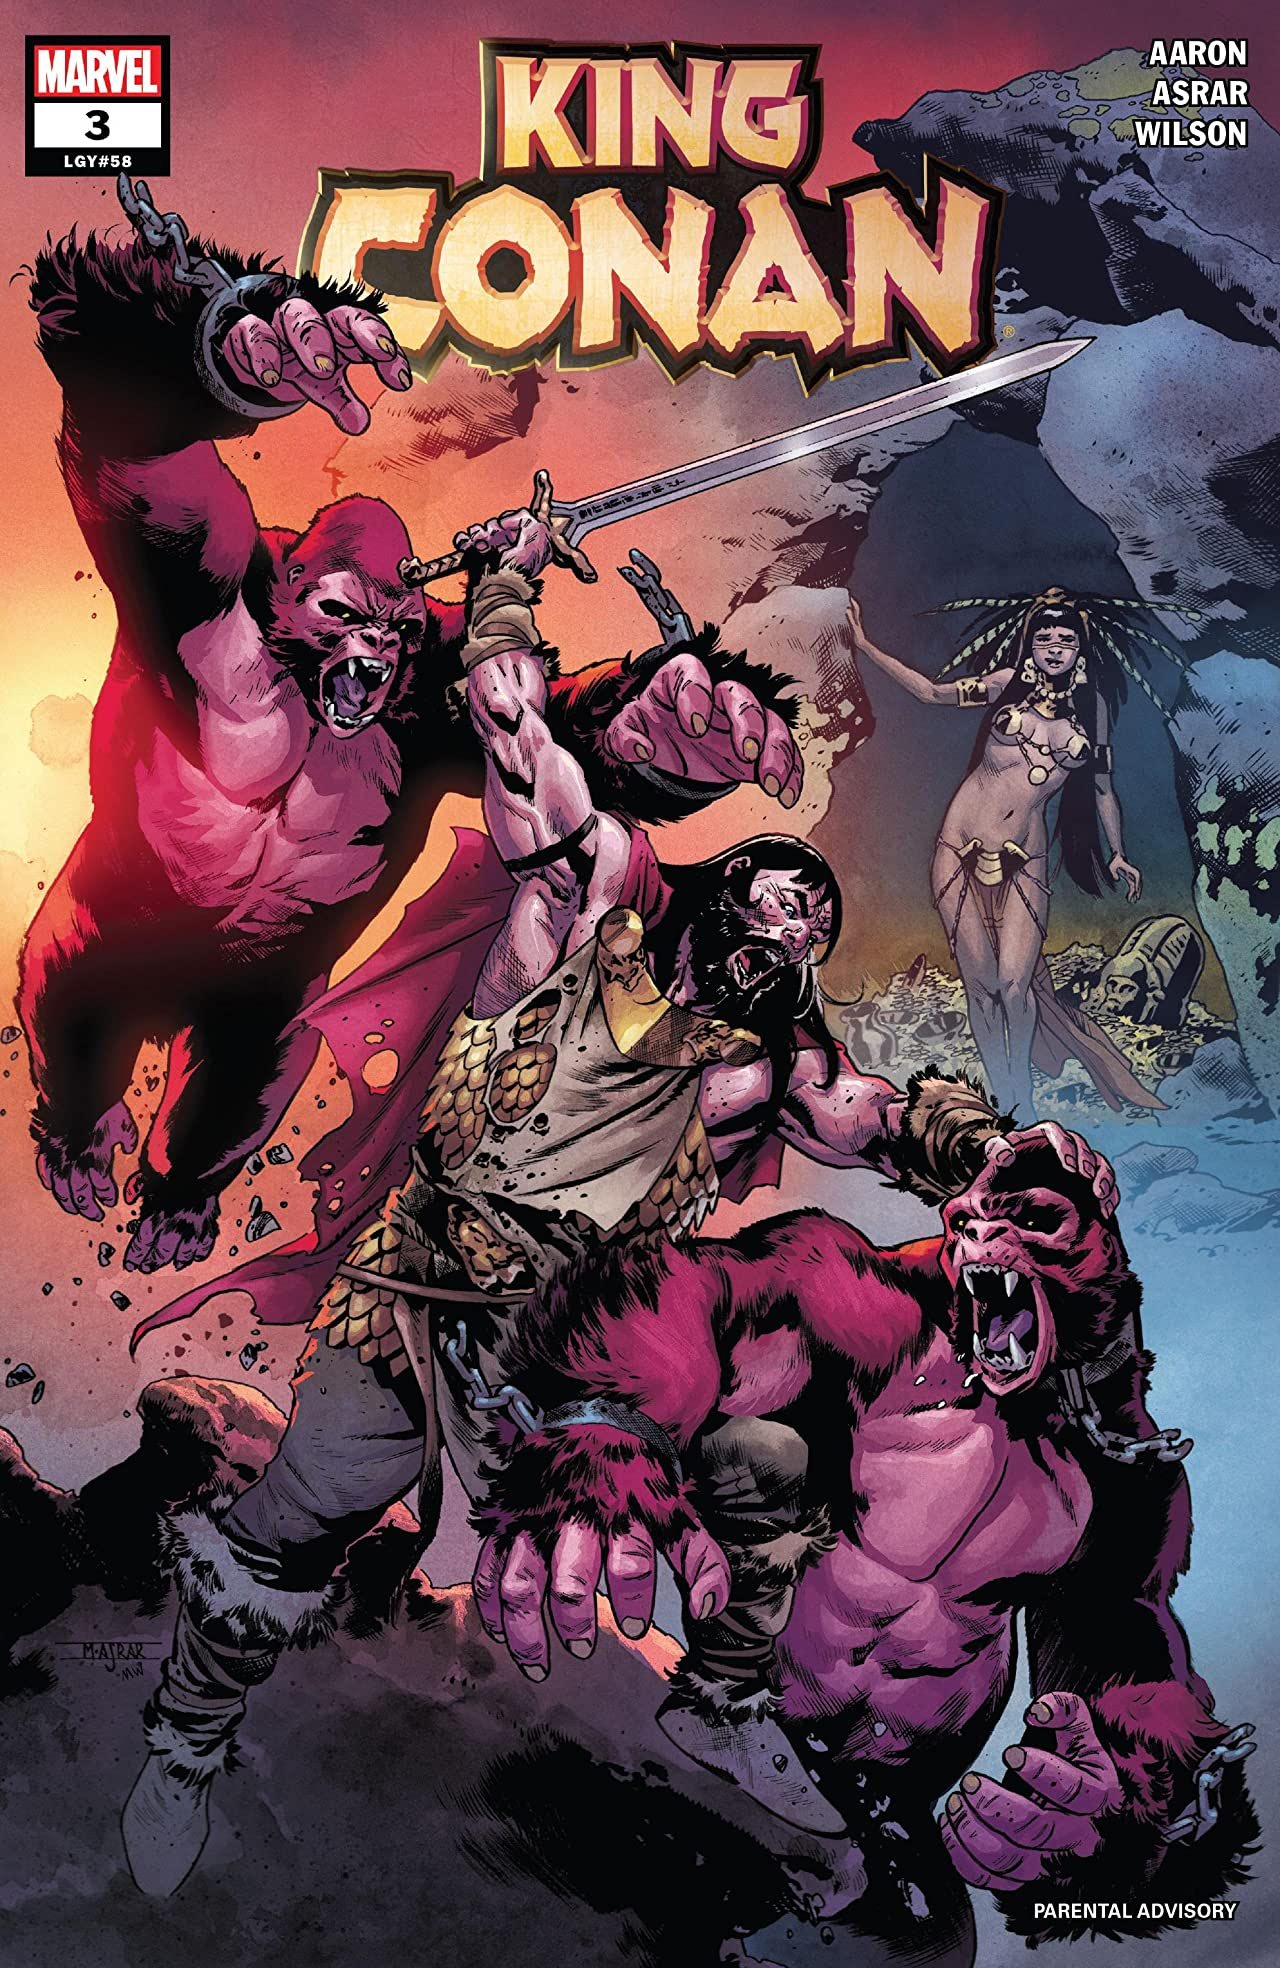 Cover di King Conan 3 di Mahmud Asrar, con il personaggio ispirato a Pocahontas